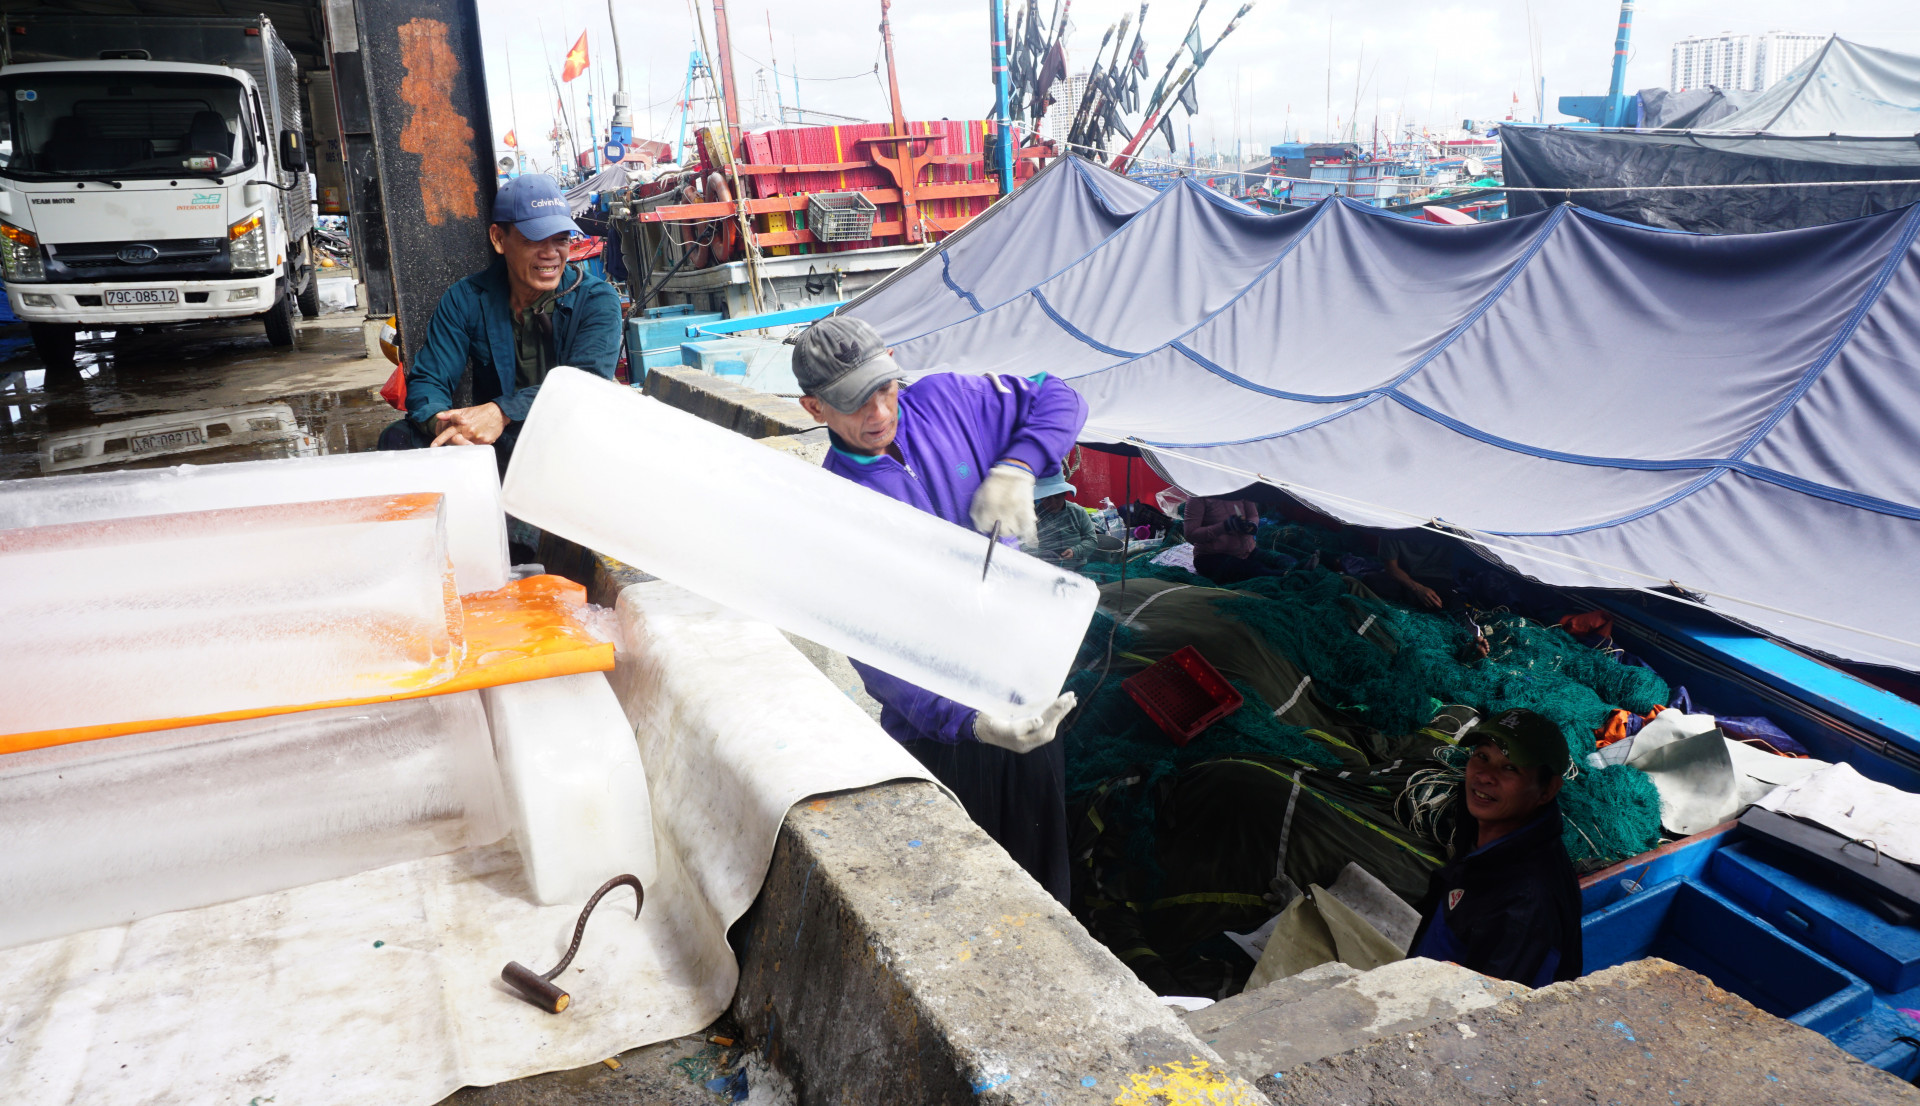 Đá lạnh được đưa xuống hầm để bảo quản hải sản khai thác trong chuyến biển xuyên Tết.